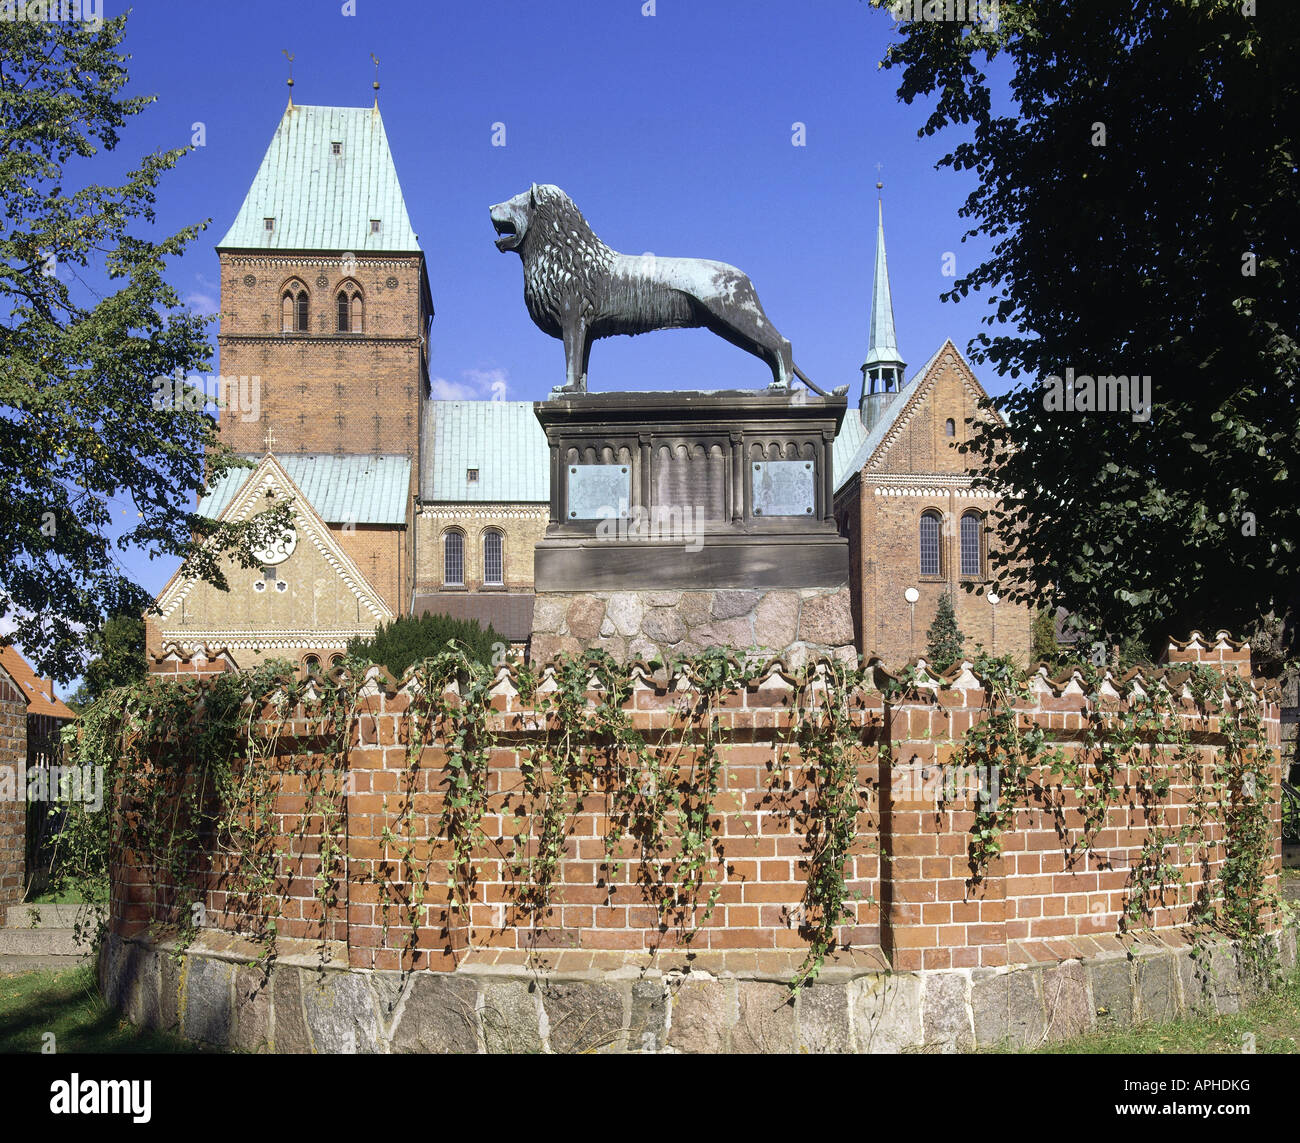 "Geographie / Reisen, Deutschland, Schleswig-Holstein, Ratzeburg, Landkreis Lauenburg, Kirche, Kathedrale mit Löwen Figu Stockfoto